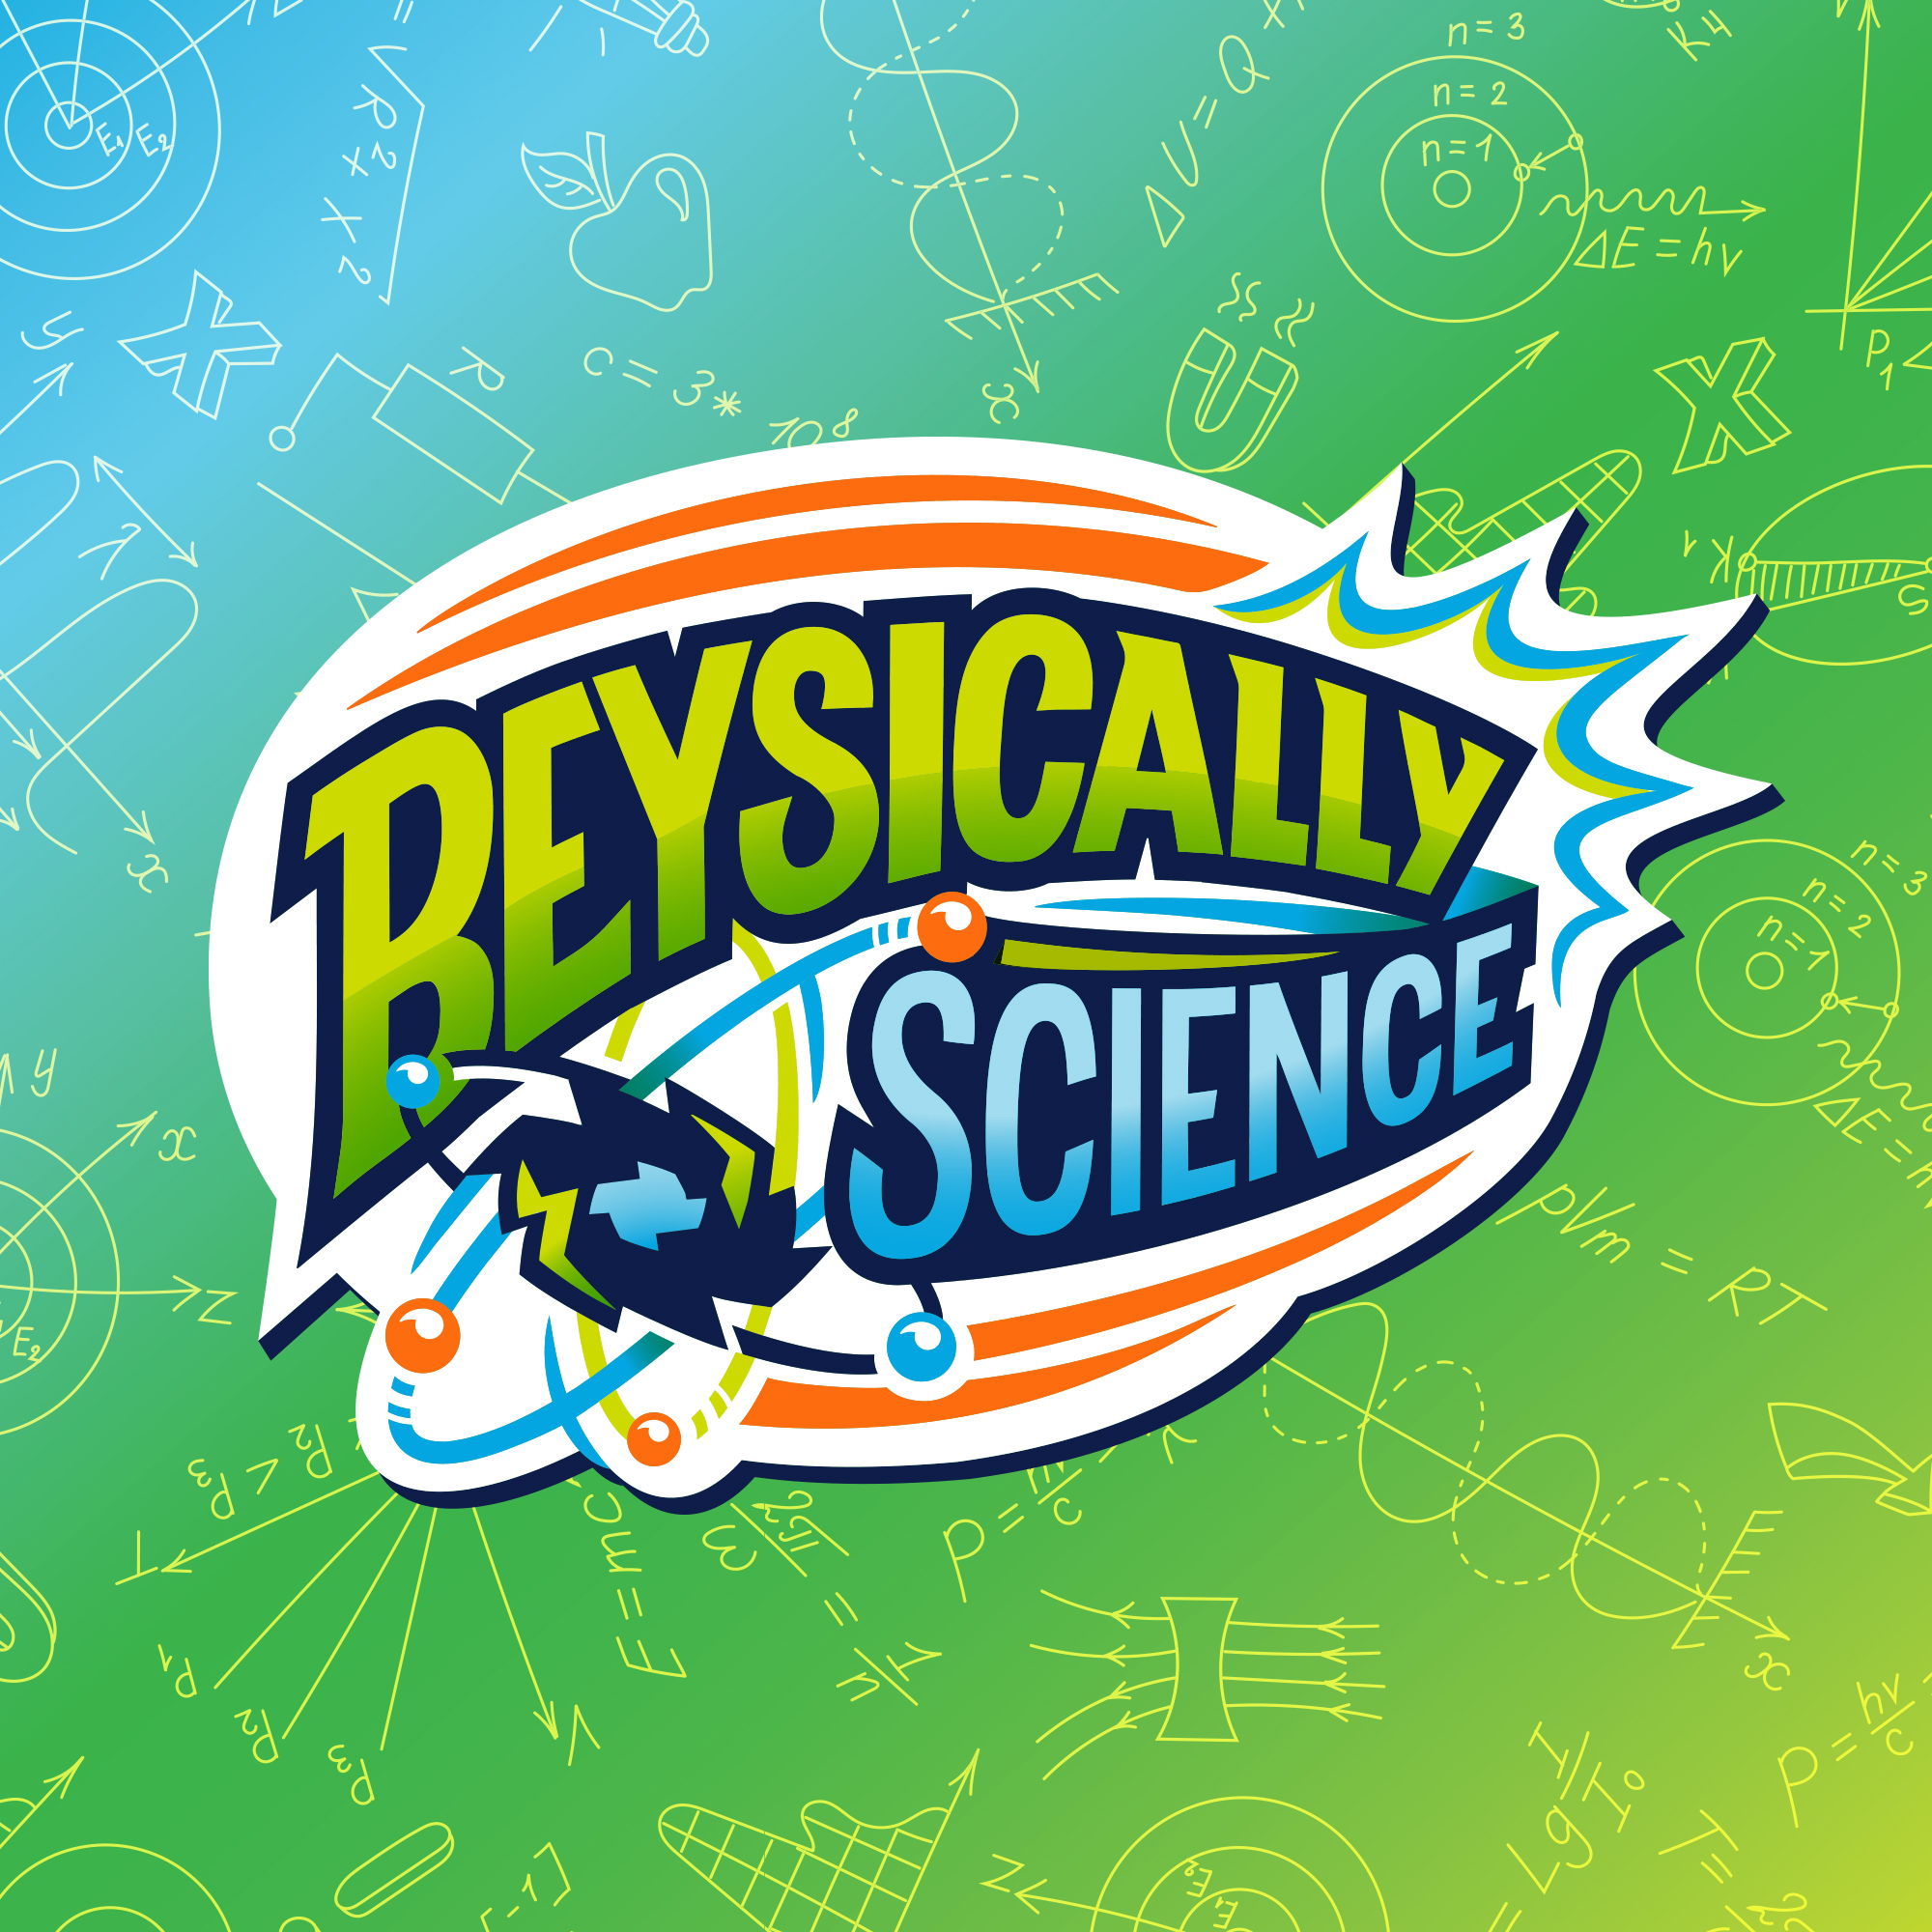 Beysically Science Brand Identity Logo on STEM Brand Background